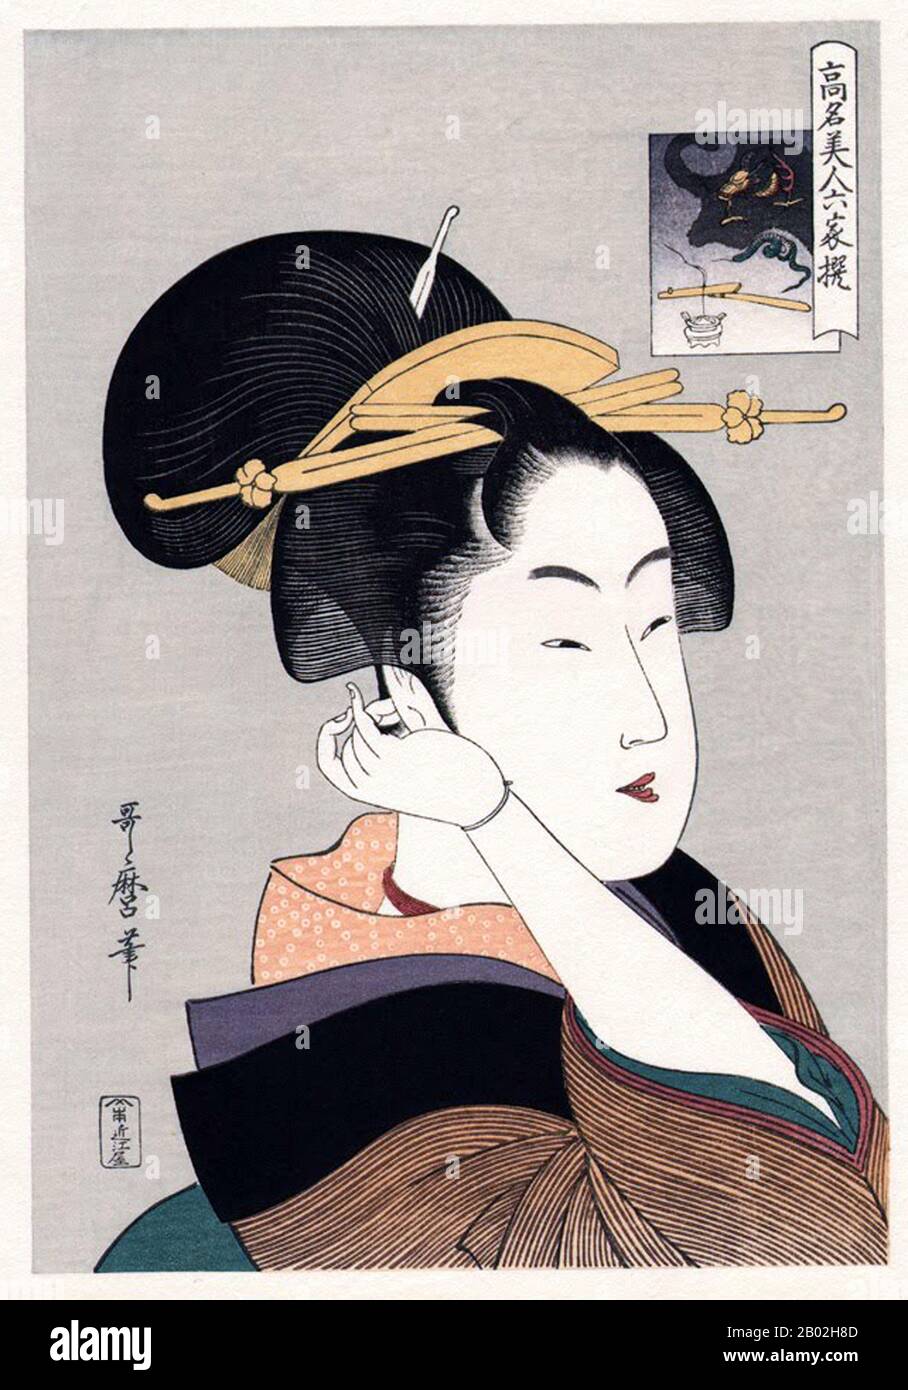 Bijinga (lit., 'bella foto della persona') è un termine generico per le immagini delle donne belle nell'arte giapponese, particolarmente nella stampa del blocco del legno del genere ukiyo-e, che pre-data la fotografia. Quasi tutti gli artisti ukiyo-e hanno prodotto bijinga, essendo uno dei temi centrali del genere. Kitagawa Utamaro (ca. 1753 - 31 ottobre 1806) è stato un pittore giapponese, considerato uno dei più grandi artisti di stampe in legno (ukiyo-e). È conosciuto soprattutto per i suoi studi magistralmente composti di donne, noto come bijinga. Ha anche prodotto studi sulla natura, in particolare libro illustrato Foto Stock